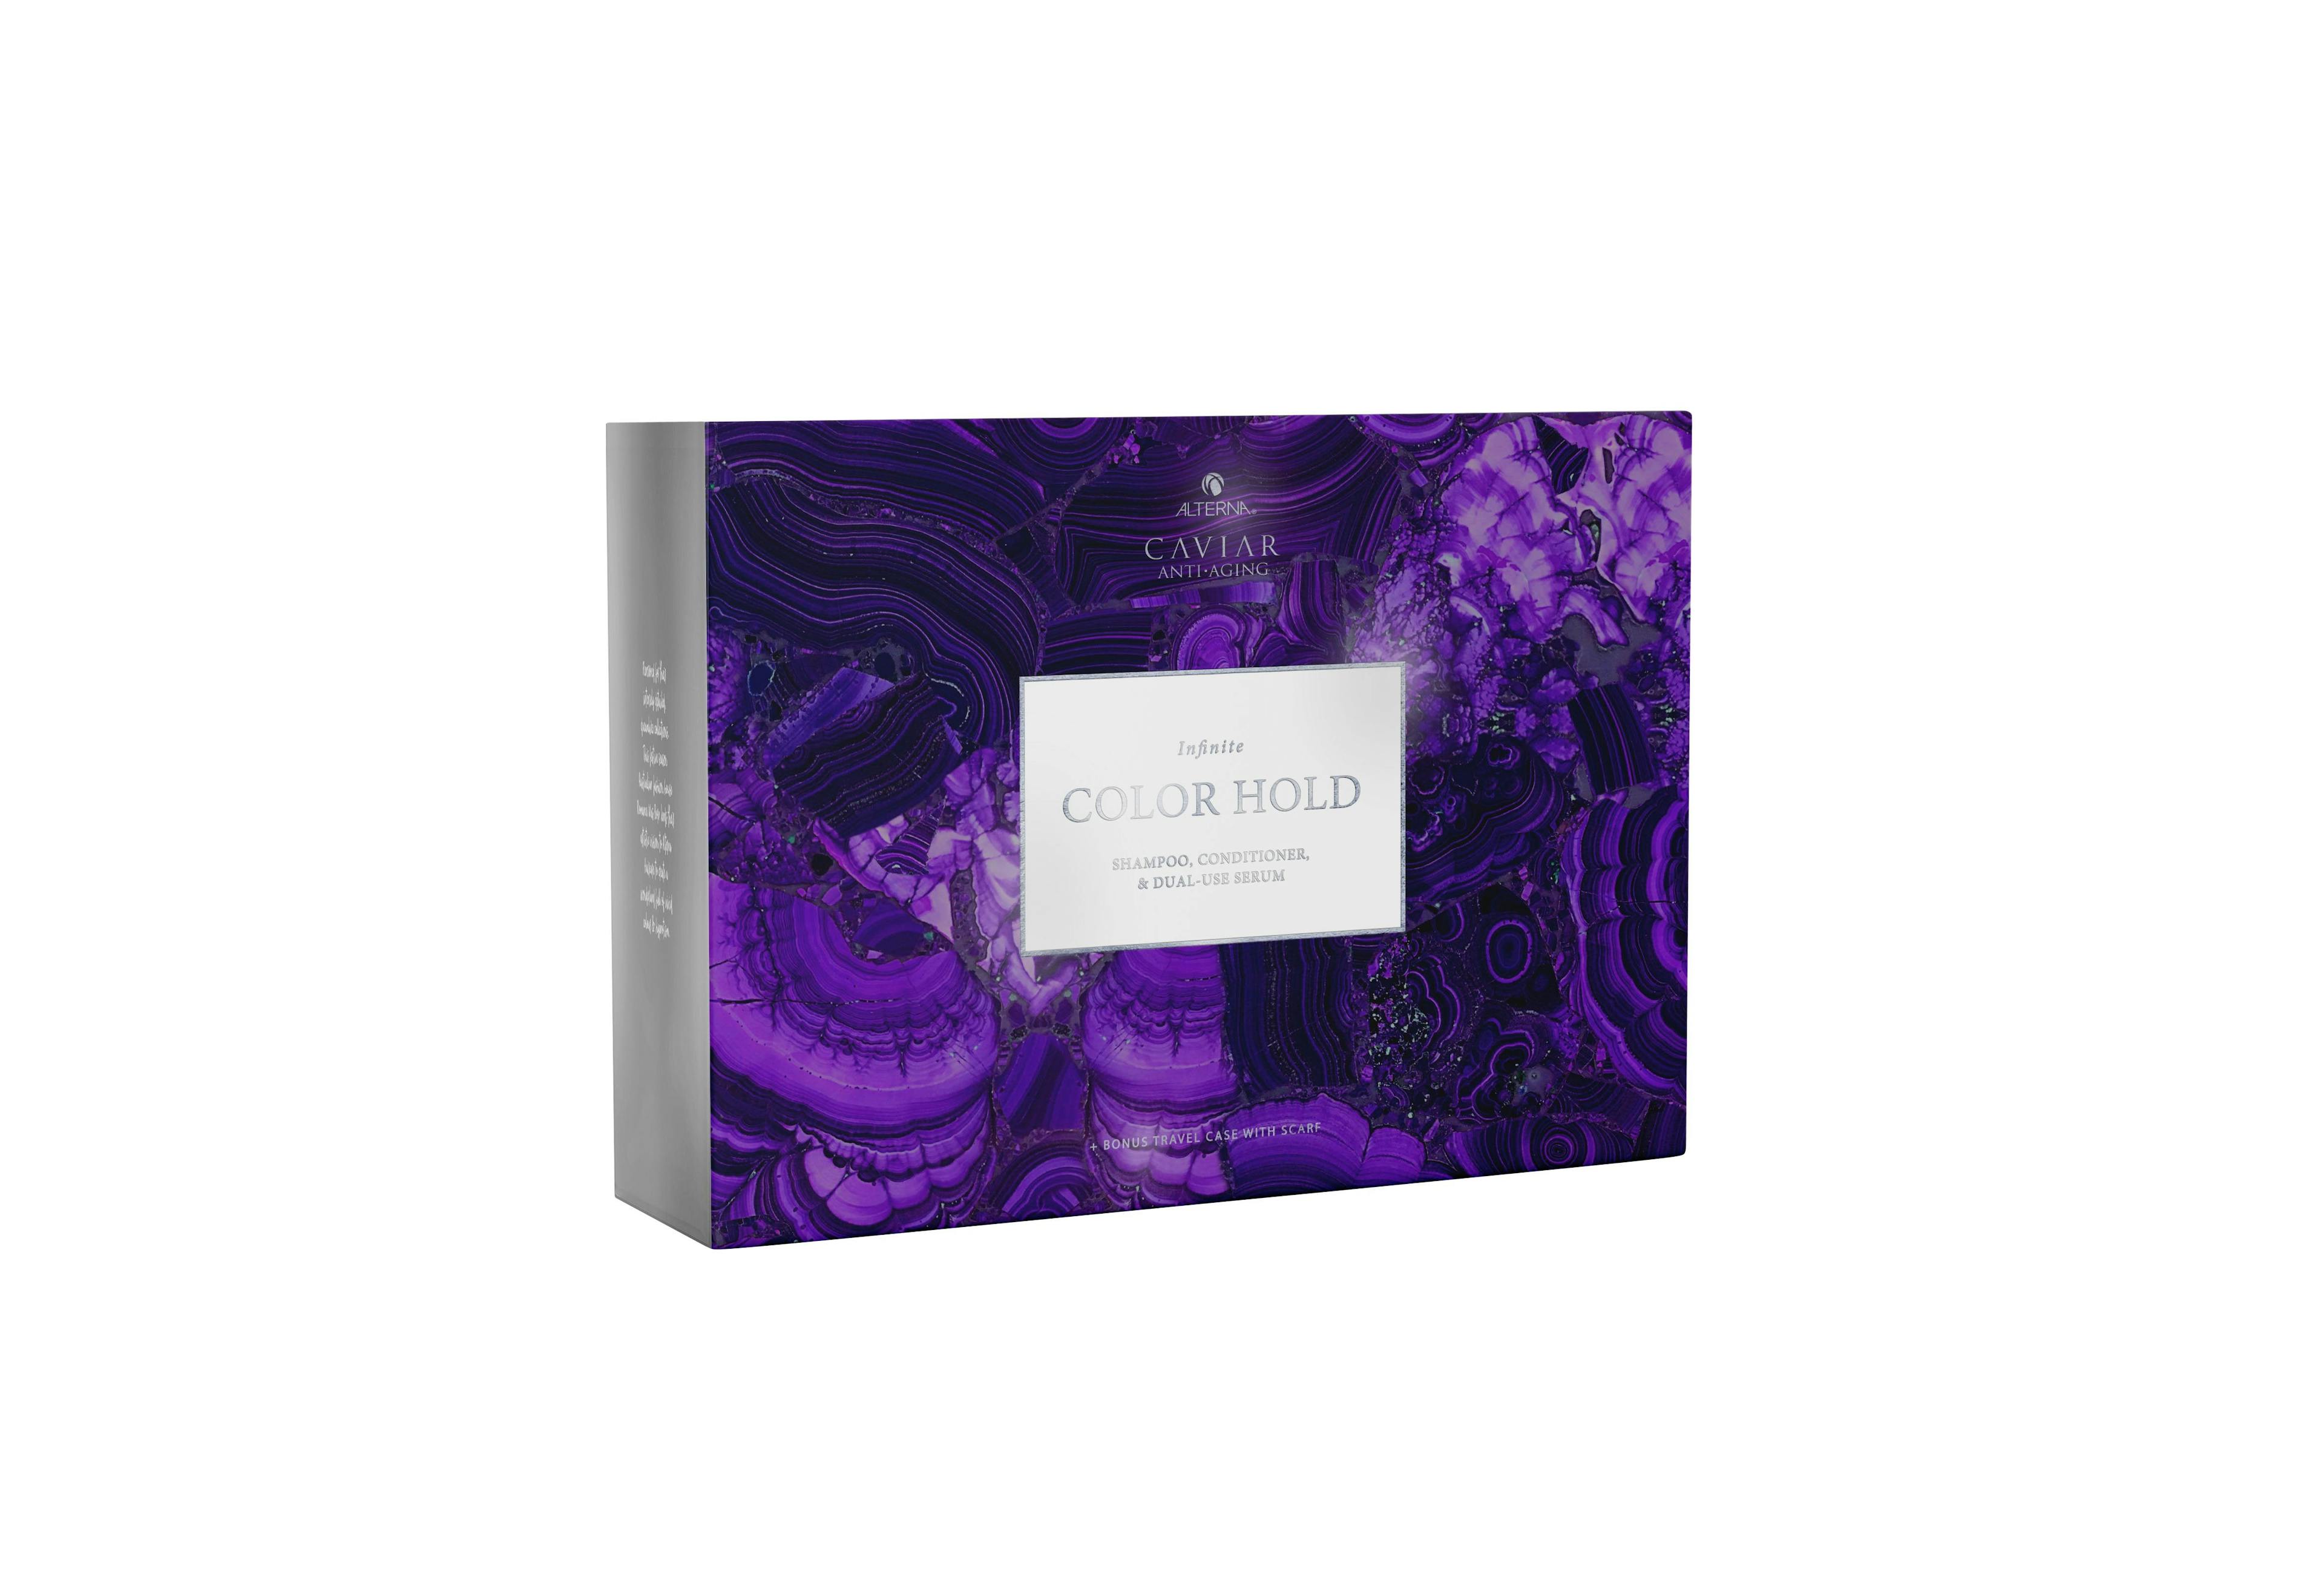 Alterna Caviar Infinite Colour Hold Trio Gift Set